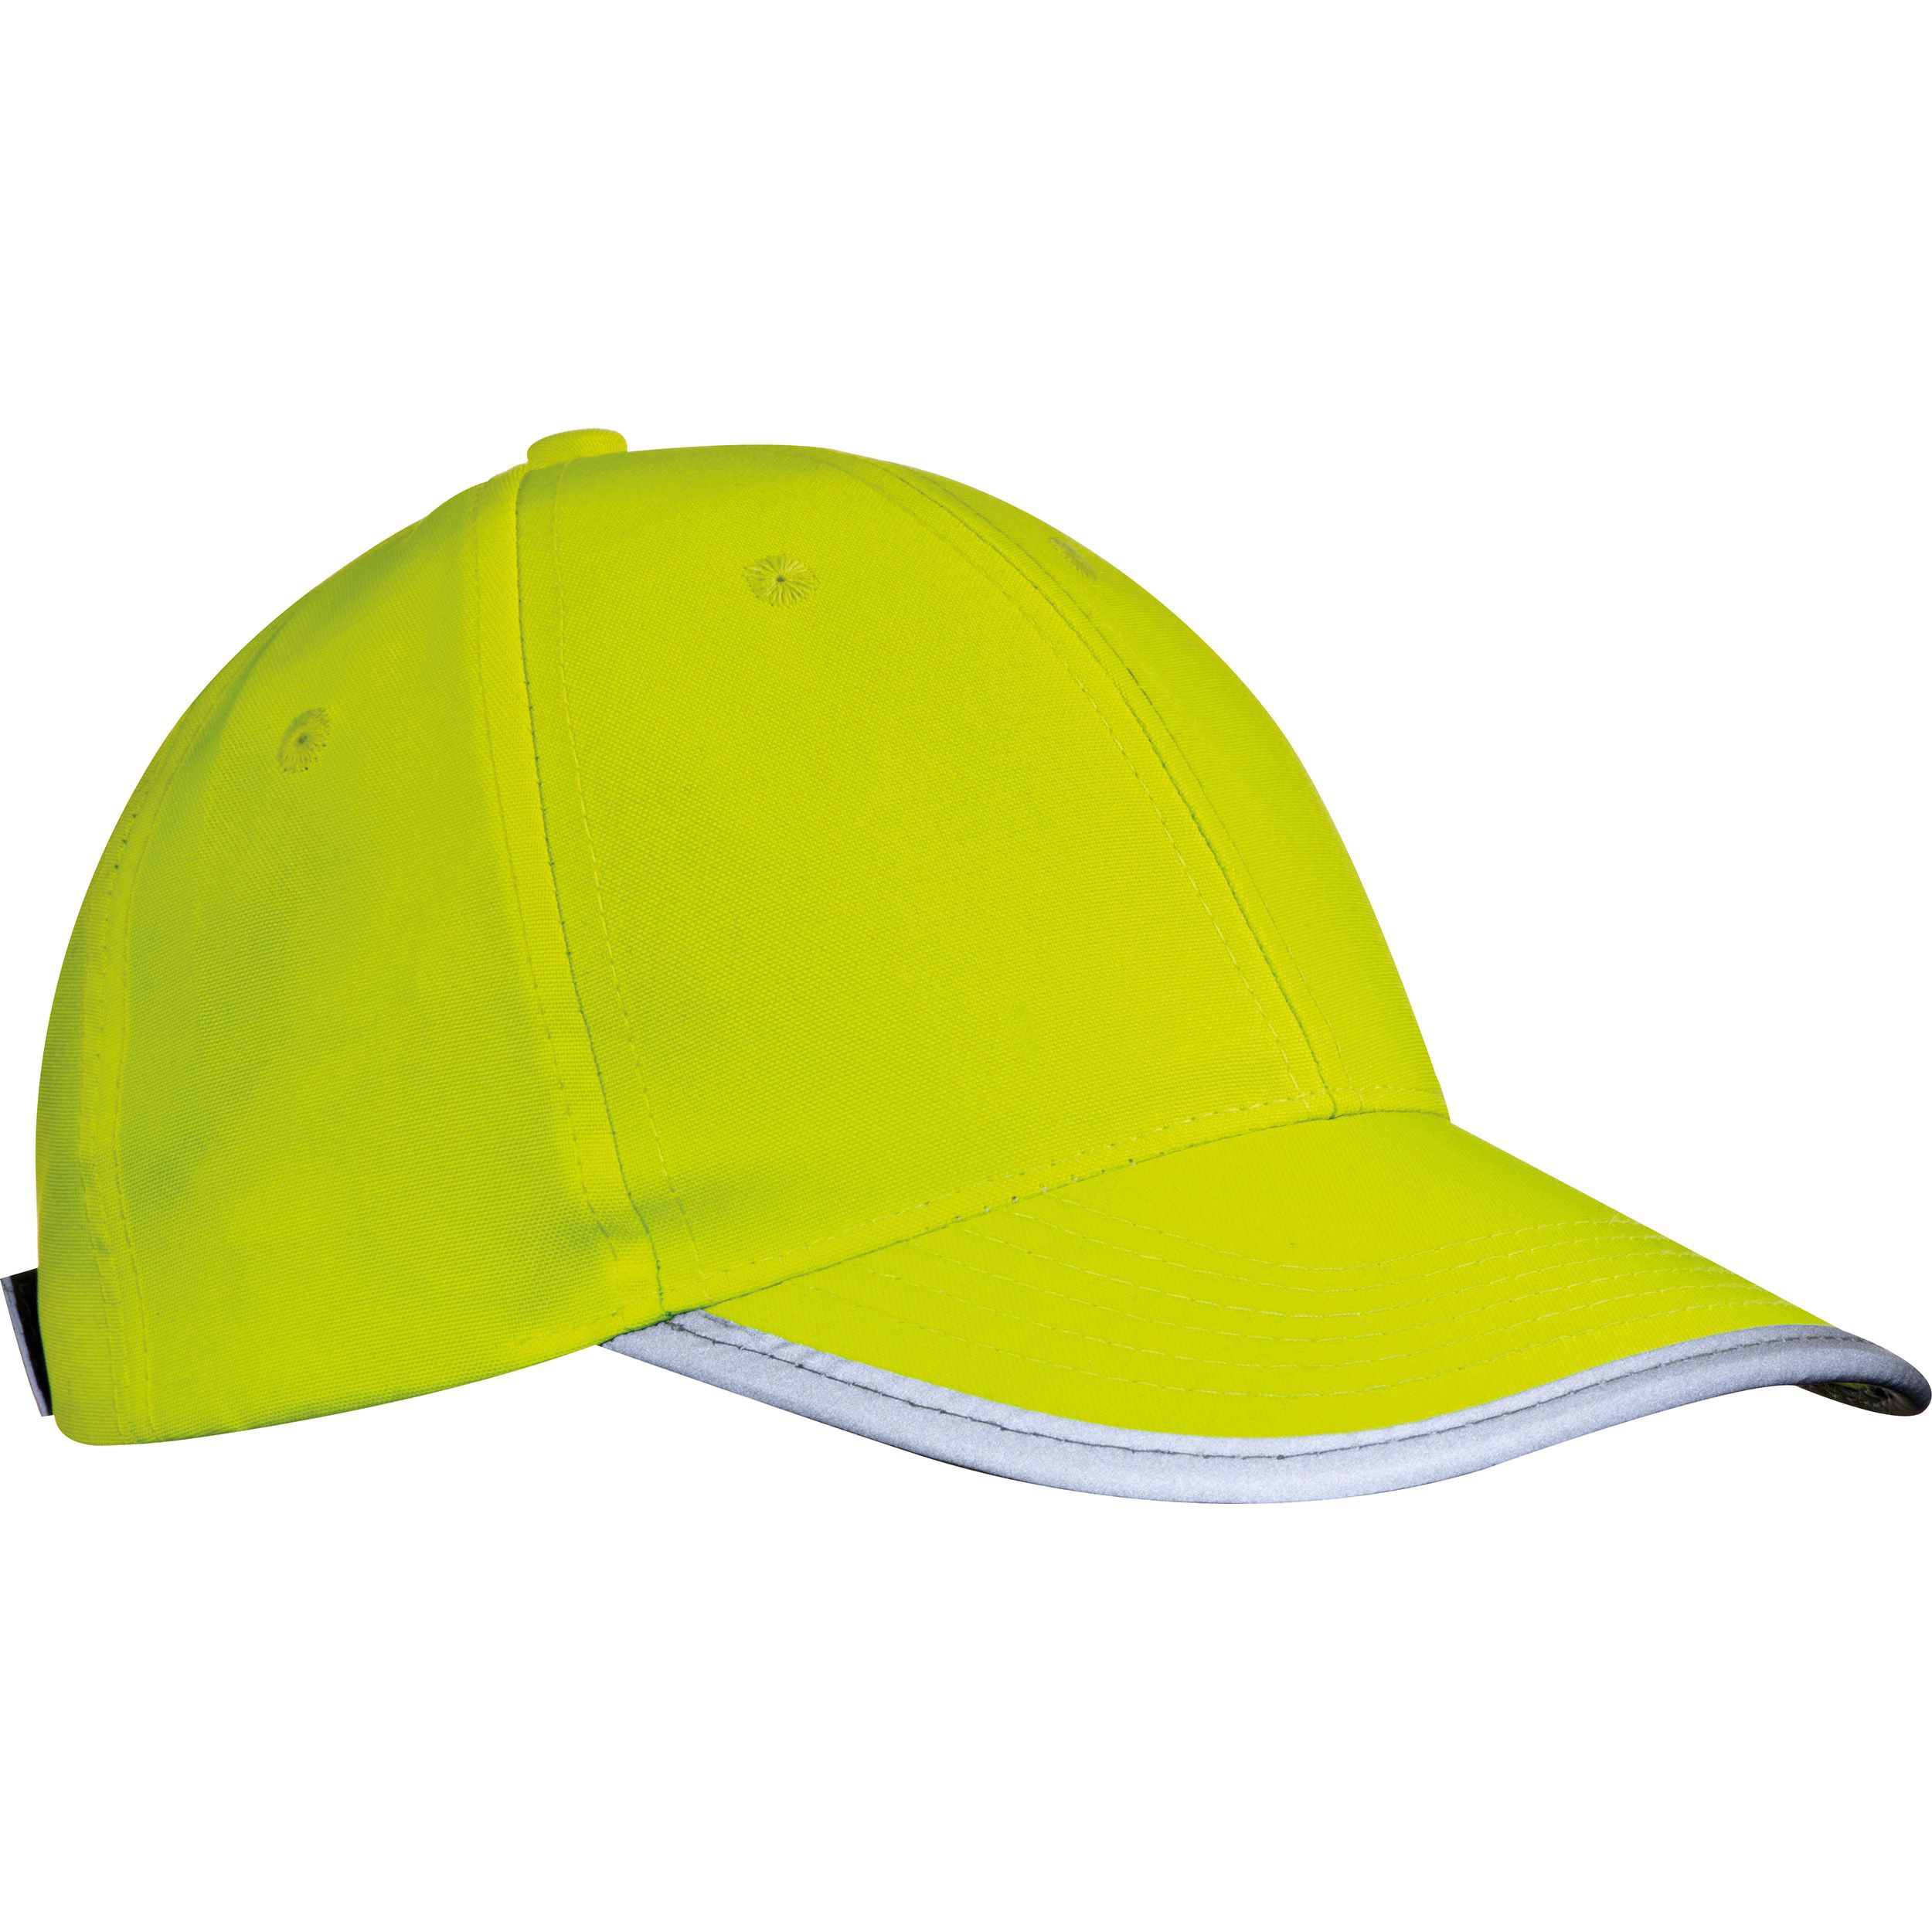 AZO freie 6 Panel Baseballcap für Erwachsene aus Polyester mit reflektierender Borte, gelb